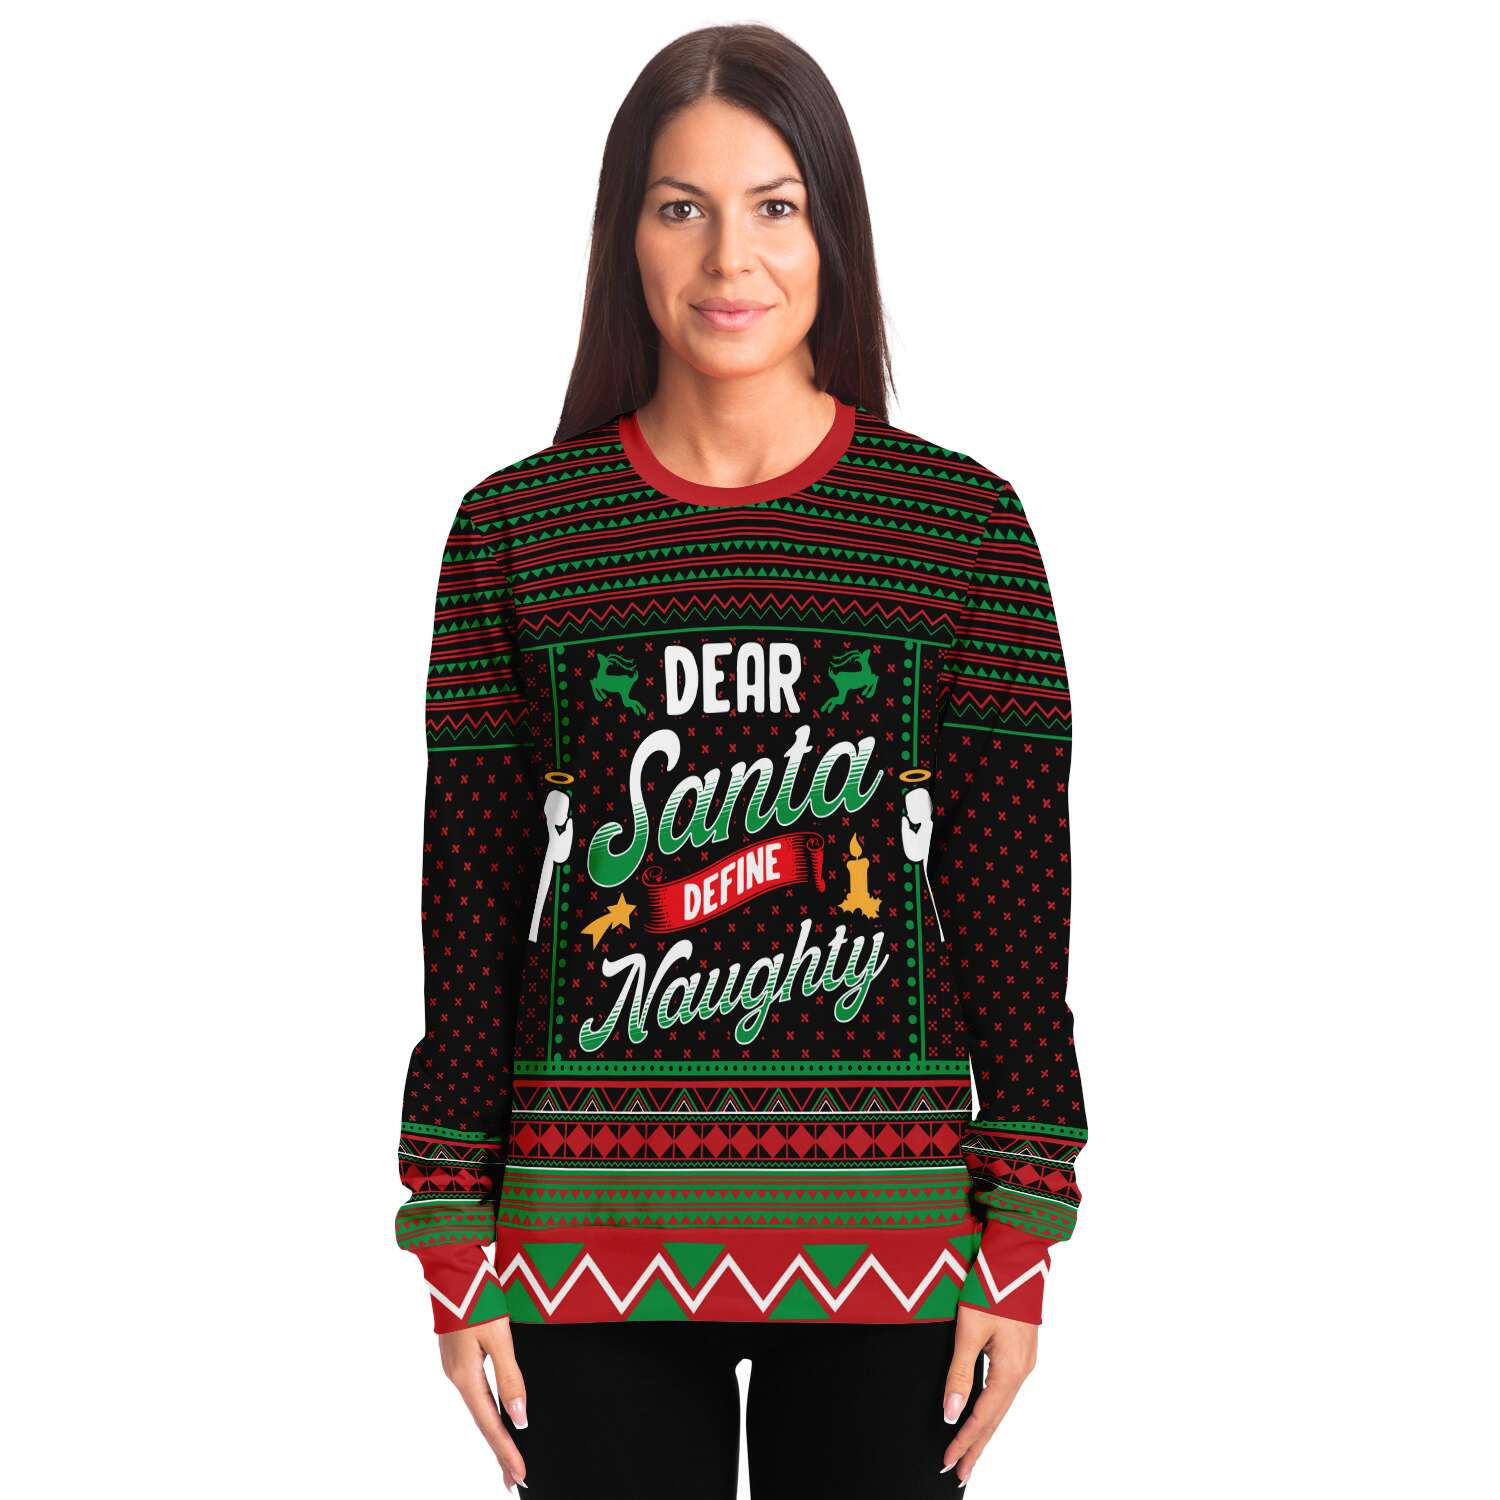 Define Naughty Sweatshirt | Unisex Ugly Christmas Sweater, Xmas Sweater, Holiday Sweater, Festive Sweater, Funny Sweater, Funny Party Shirt